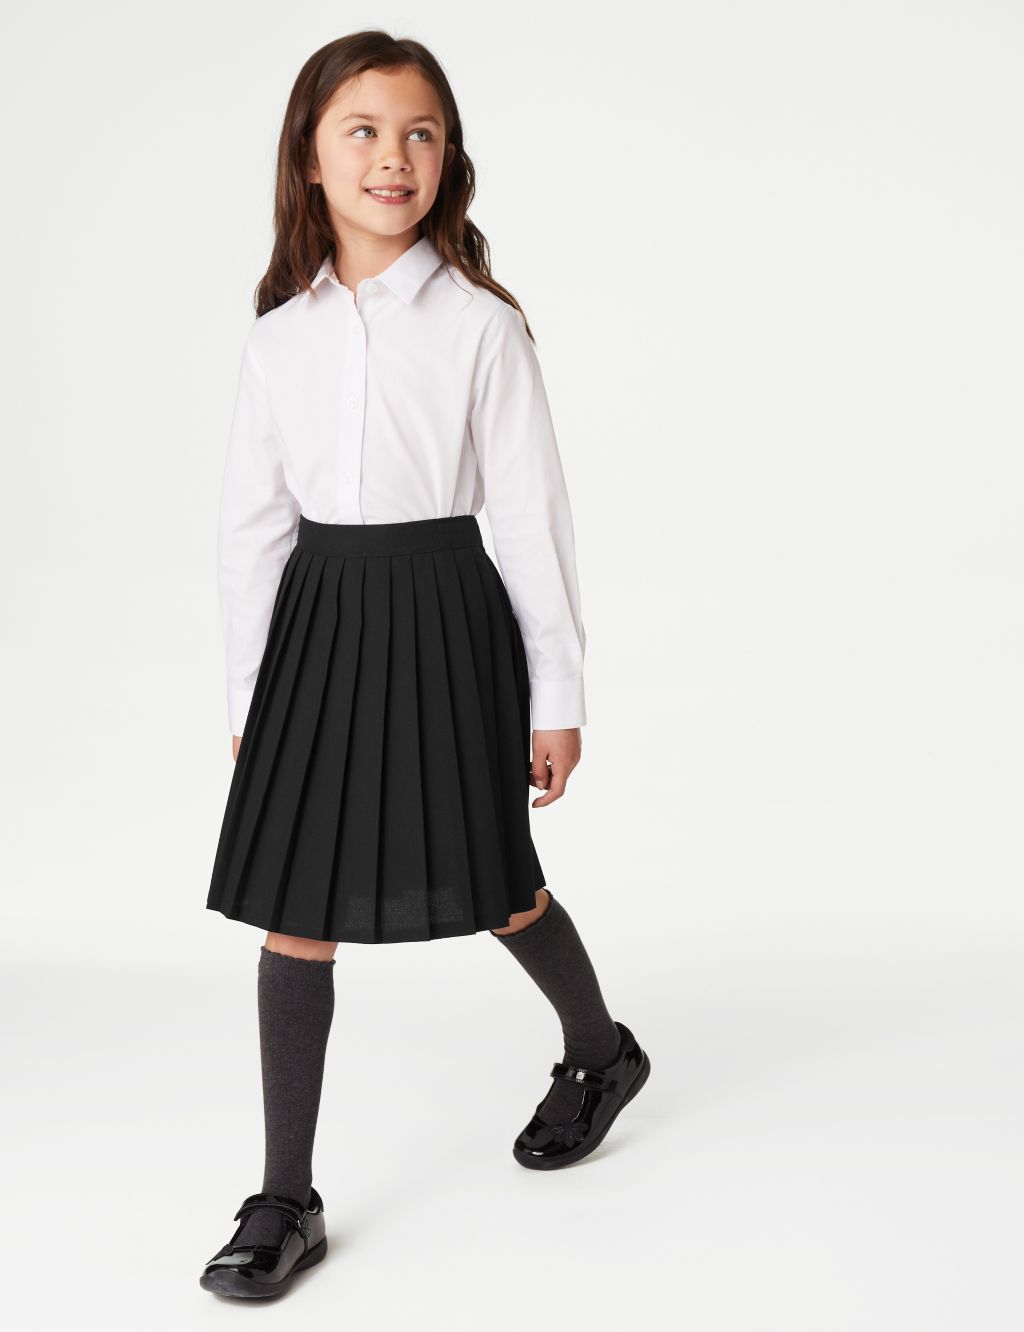 Girls' Easy Dressing Pull On School Skirt (2-16 Yrs) image 1